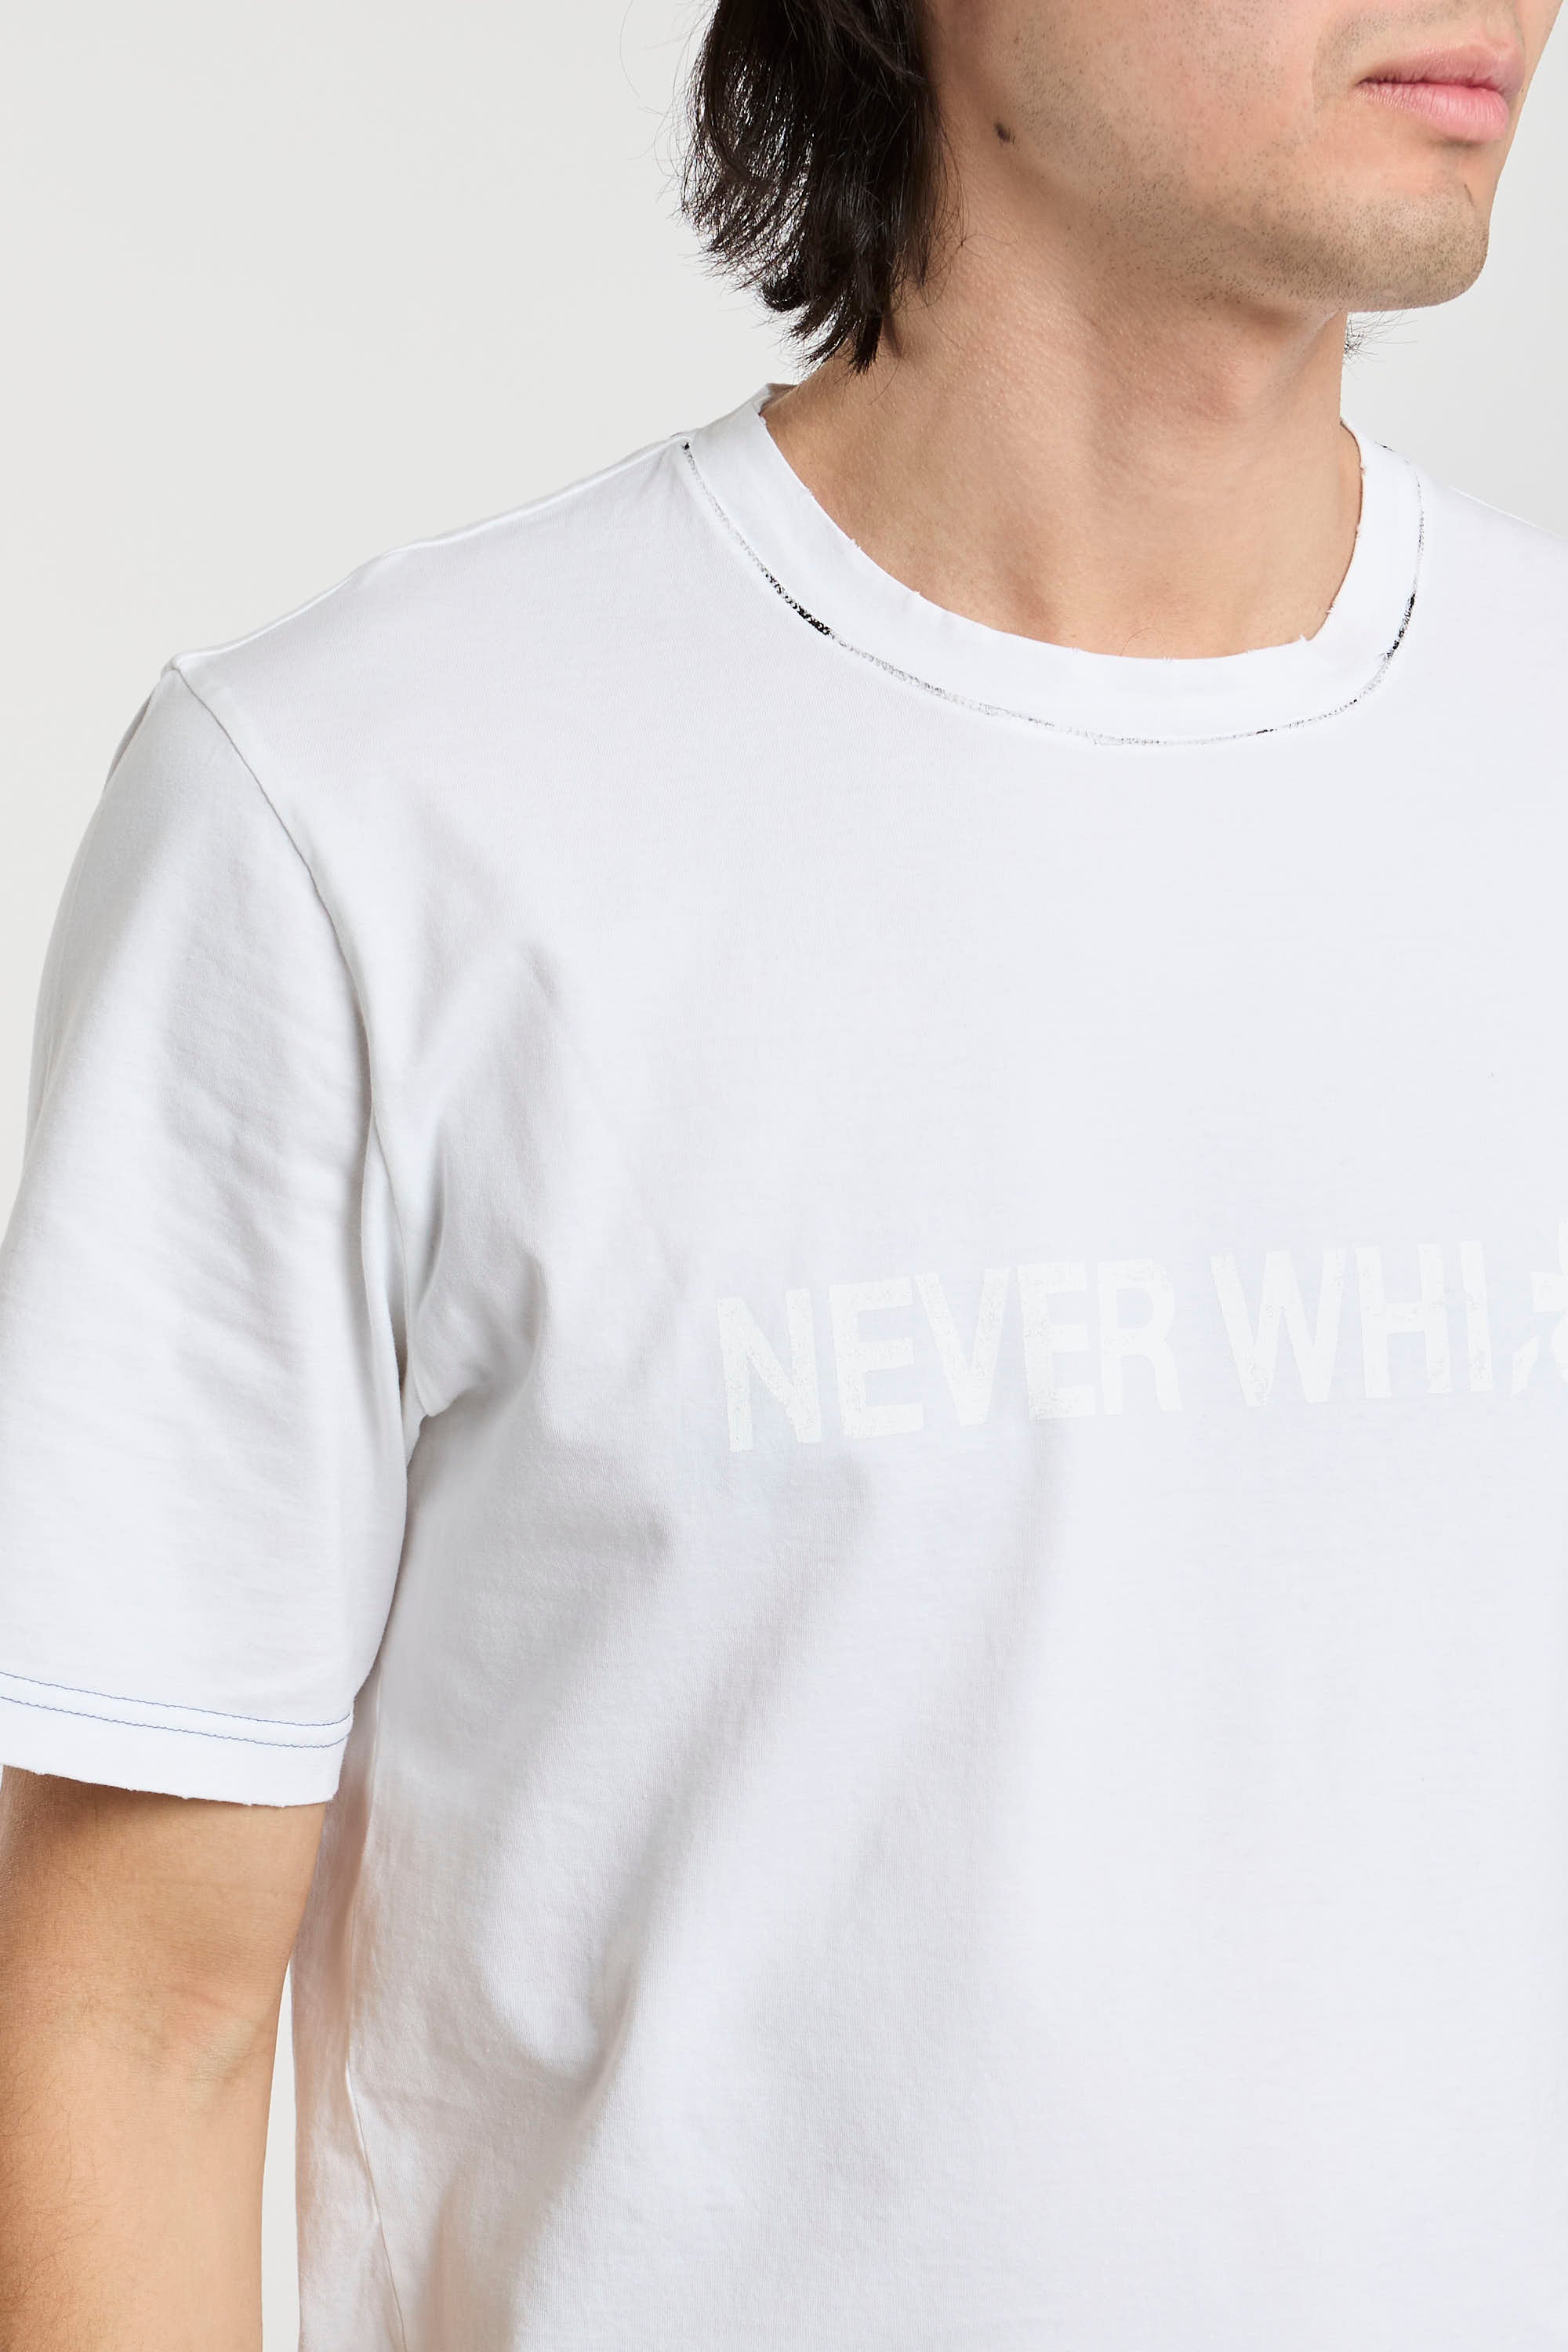 Premiata T-Shirt 'Never White' in White Cotton-1